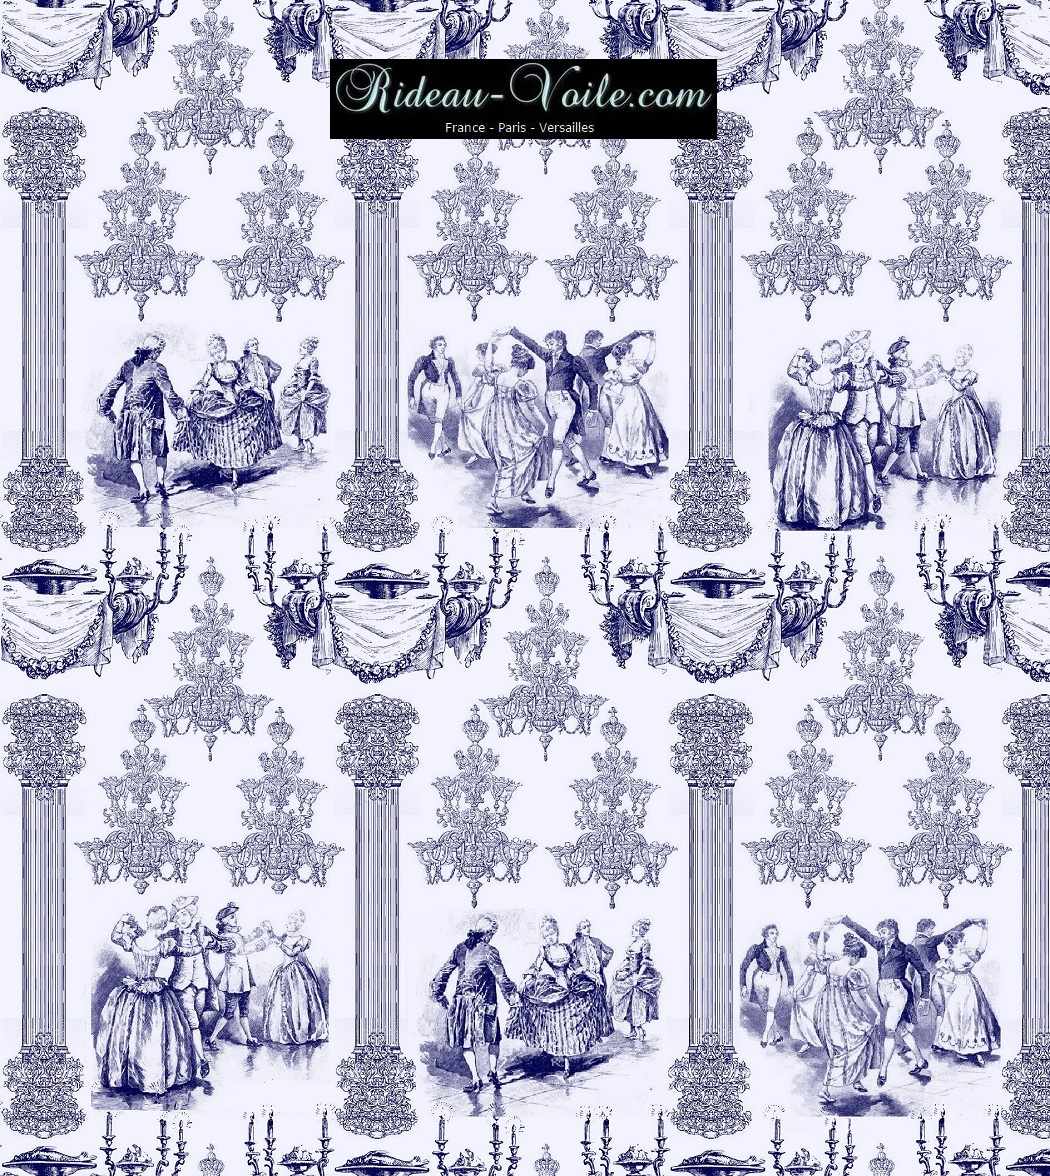 accessoire déco Paris Versailles tissu ameublement style Empire Toile de Jouy au mètre sur mesure rideau coussin couette abat-jour tapisserie décoration papier-peint bleu